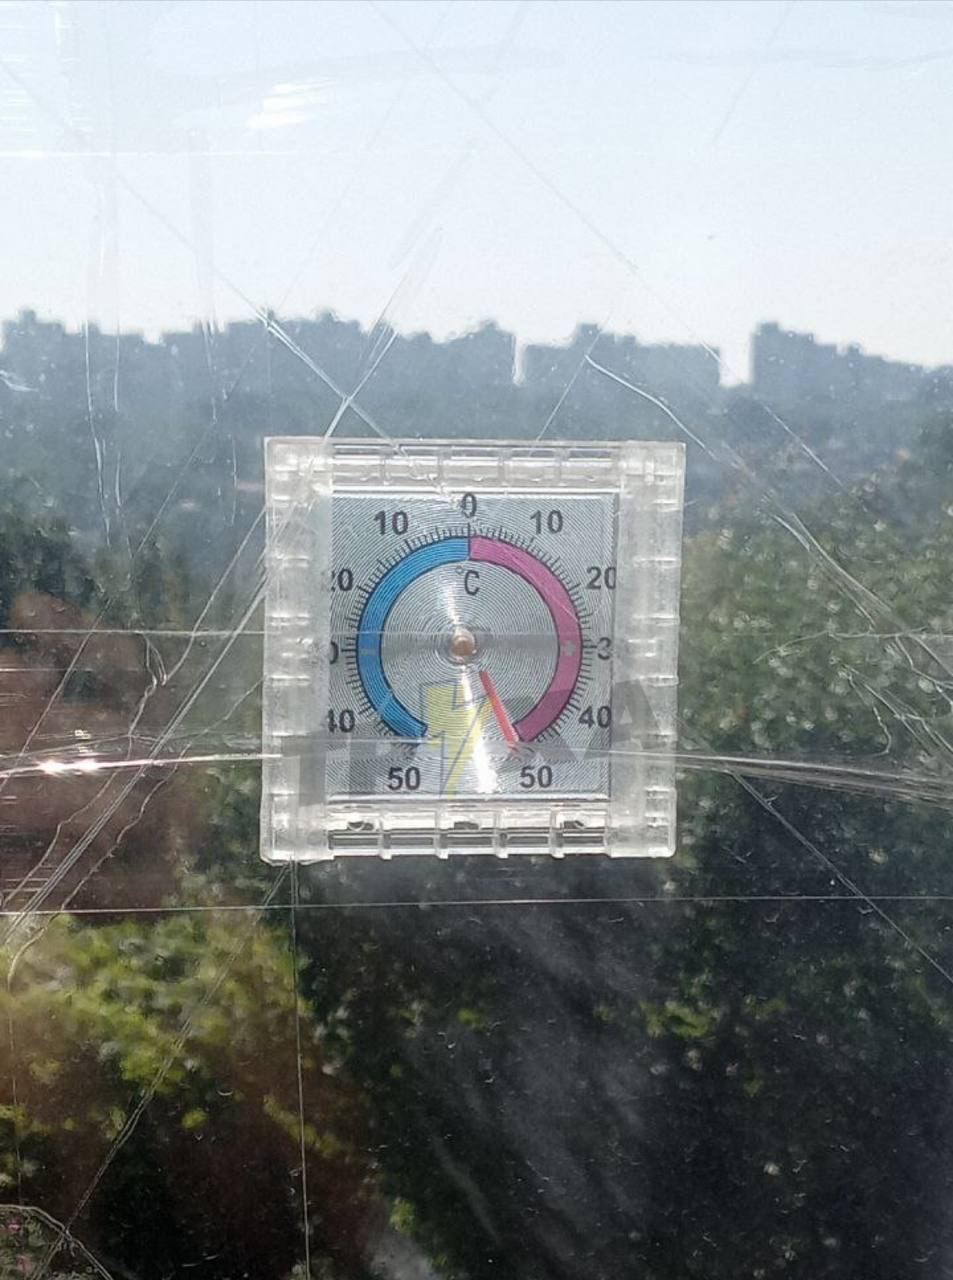 Термометры зашкаливают: украинцы жалуются на жару +50 и жарят яичницу на подоконнике. Фото